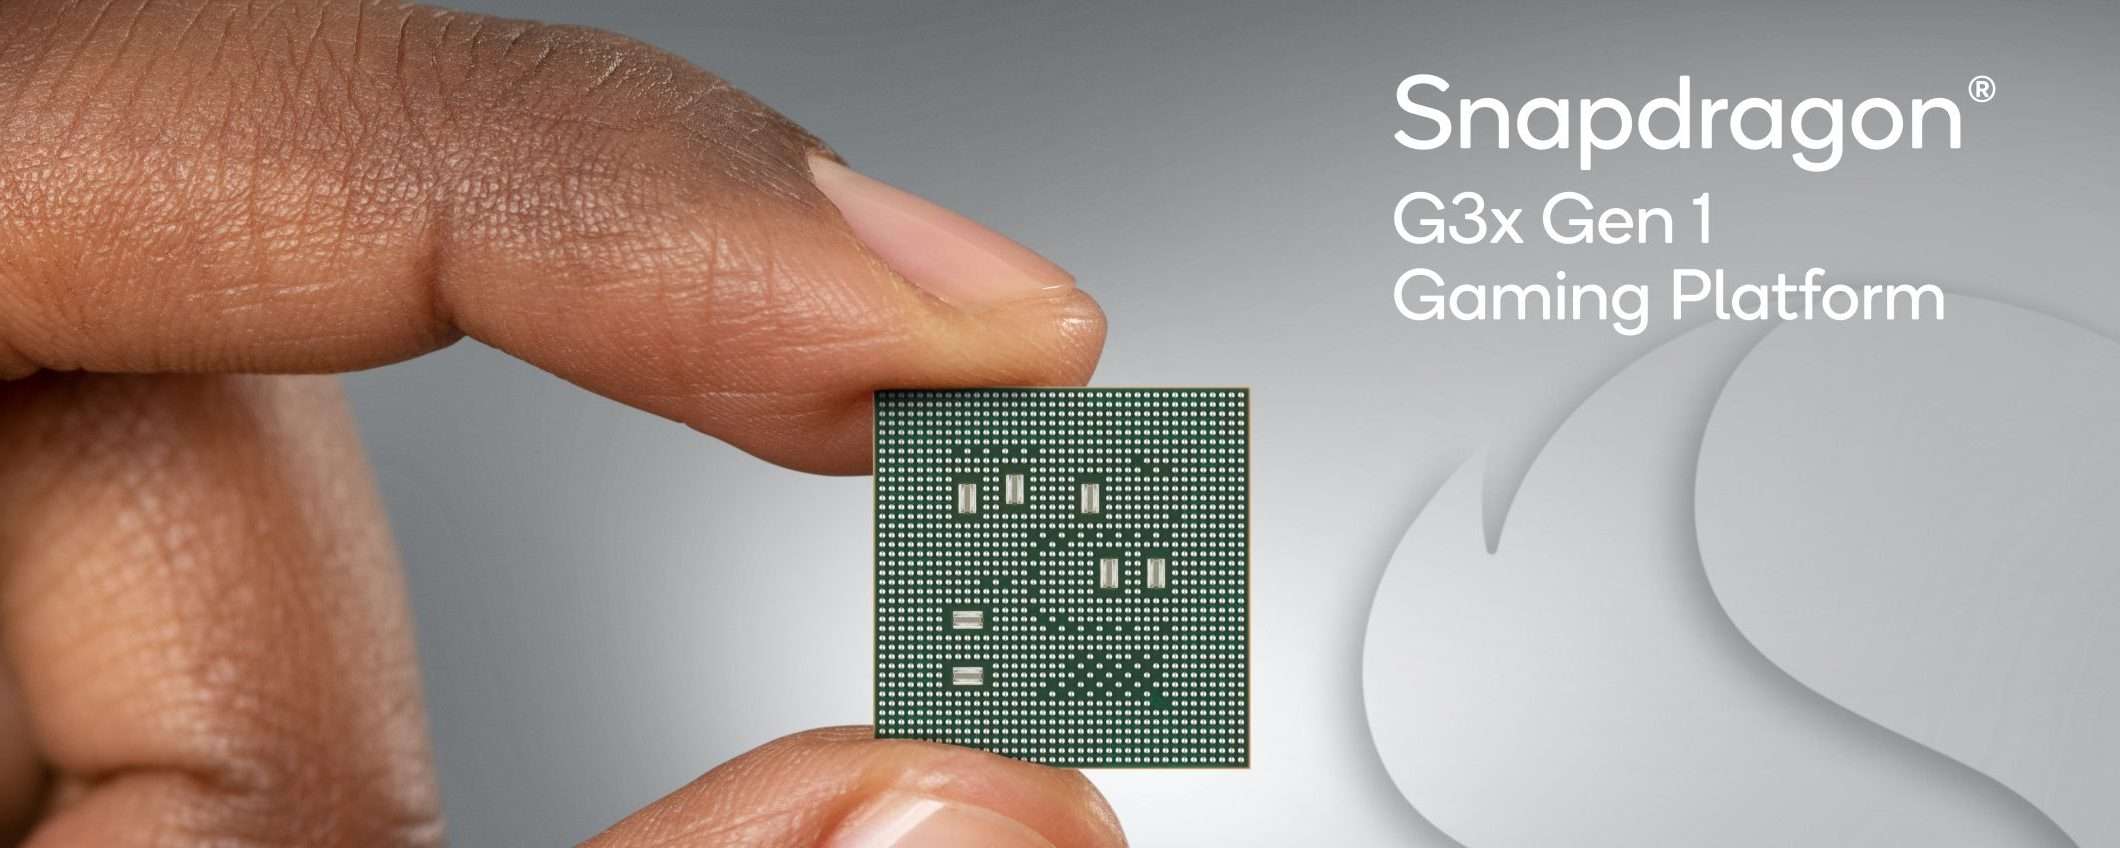 Snapdragon G3x Gen 1: primo chip per il gaming